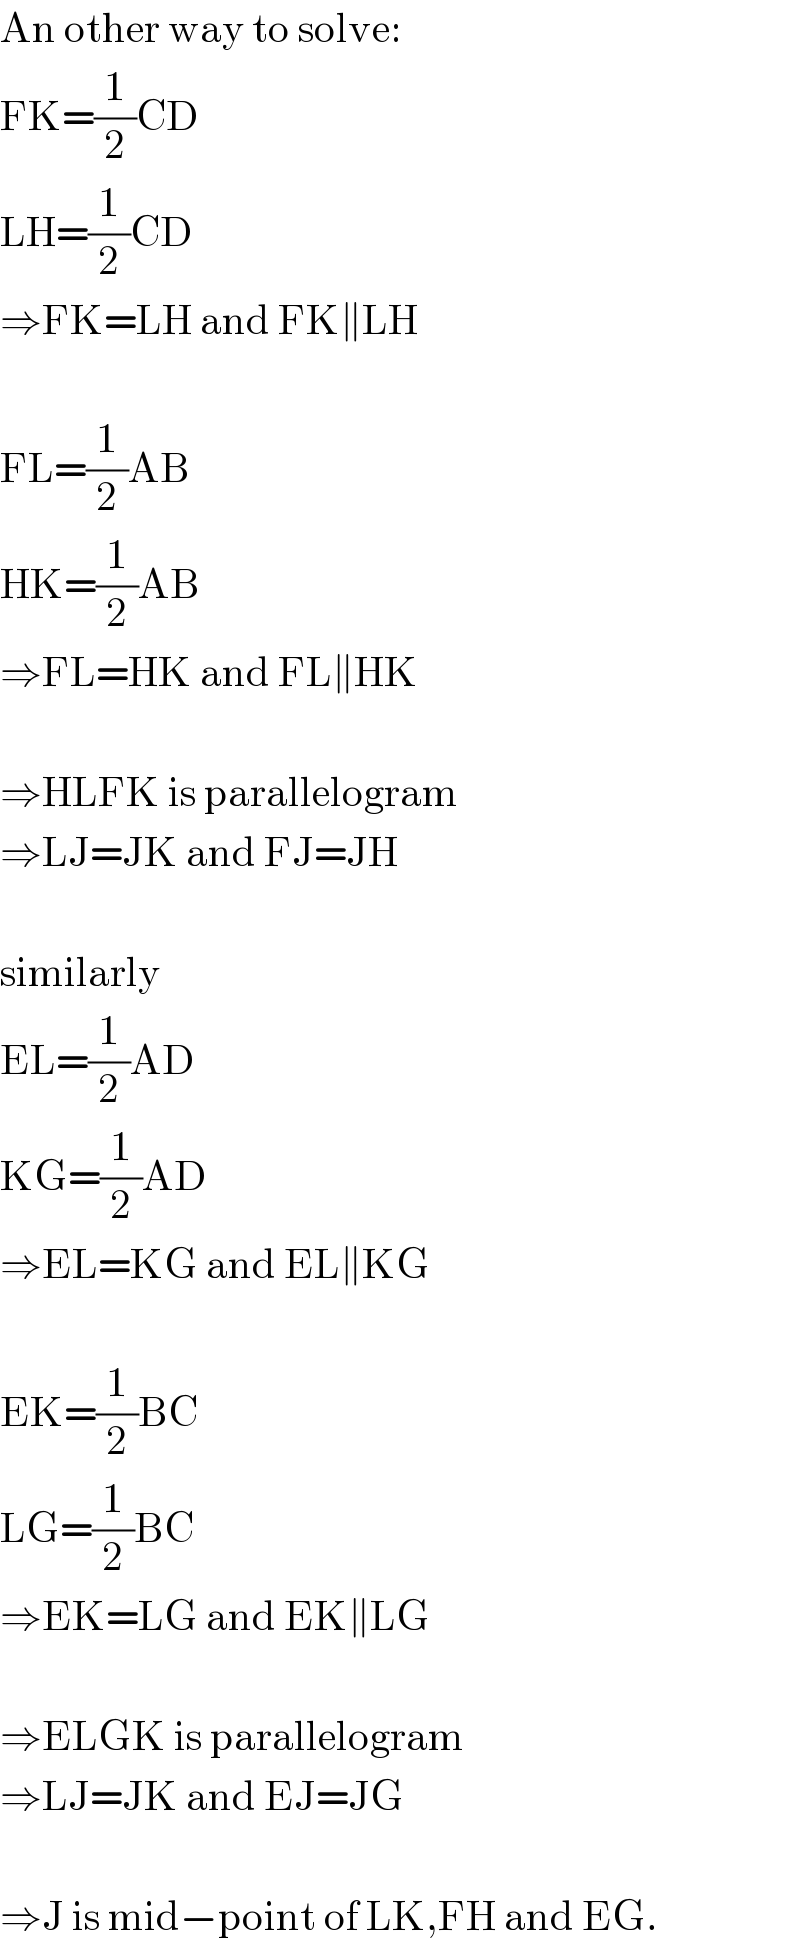 An other way to solve:  FK=(1/2)CD  LH=(1/2)CD  ⇒FK=LH and FK∥LH    FL=(1/2)AB  HK=(1/2)AB  ⇒FL=HK and FL∥HK    ⇒HLFK is parallelogram  ⇒LJ=JK and FJ=JH    similarly  EL=(1/2)AD  KG=(1/2)AD  ⇒EL=KG and EL∥KG    EK=(1/2)BC  LG=(1/2)BC  ⇒EK=LG and EK∥LG    ⇒ELGK is parallelogram  ⇒LJ=JK and EJ=JG    ⇒J is mid−point of LK,FH and EG.  